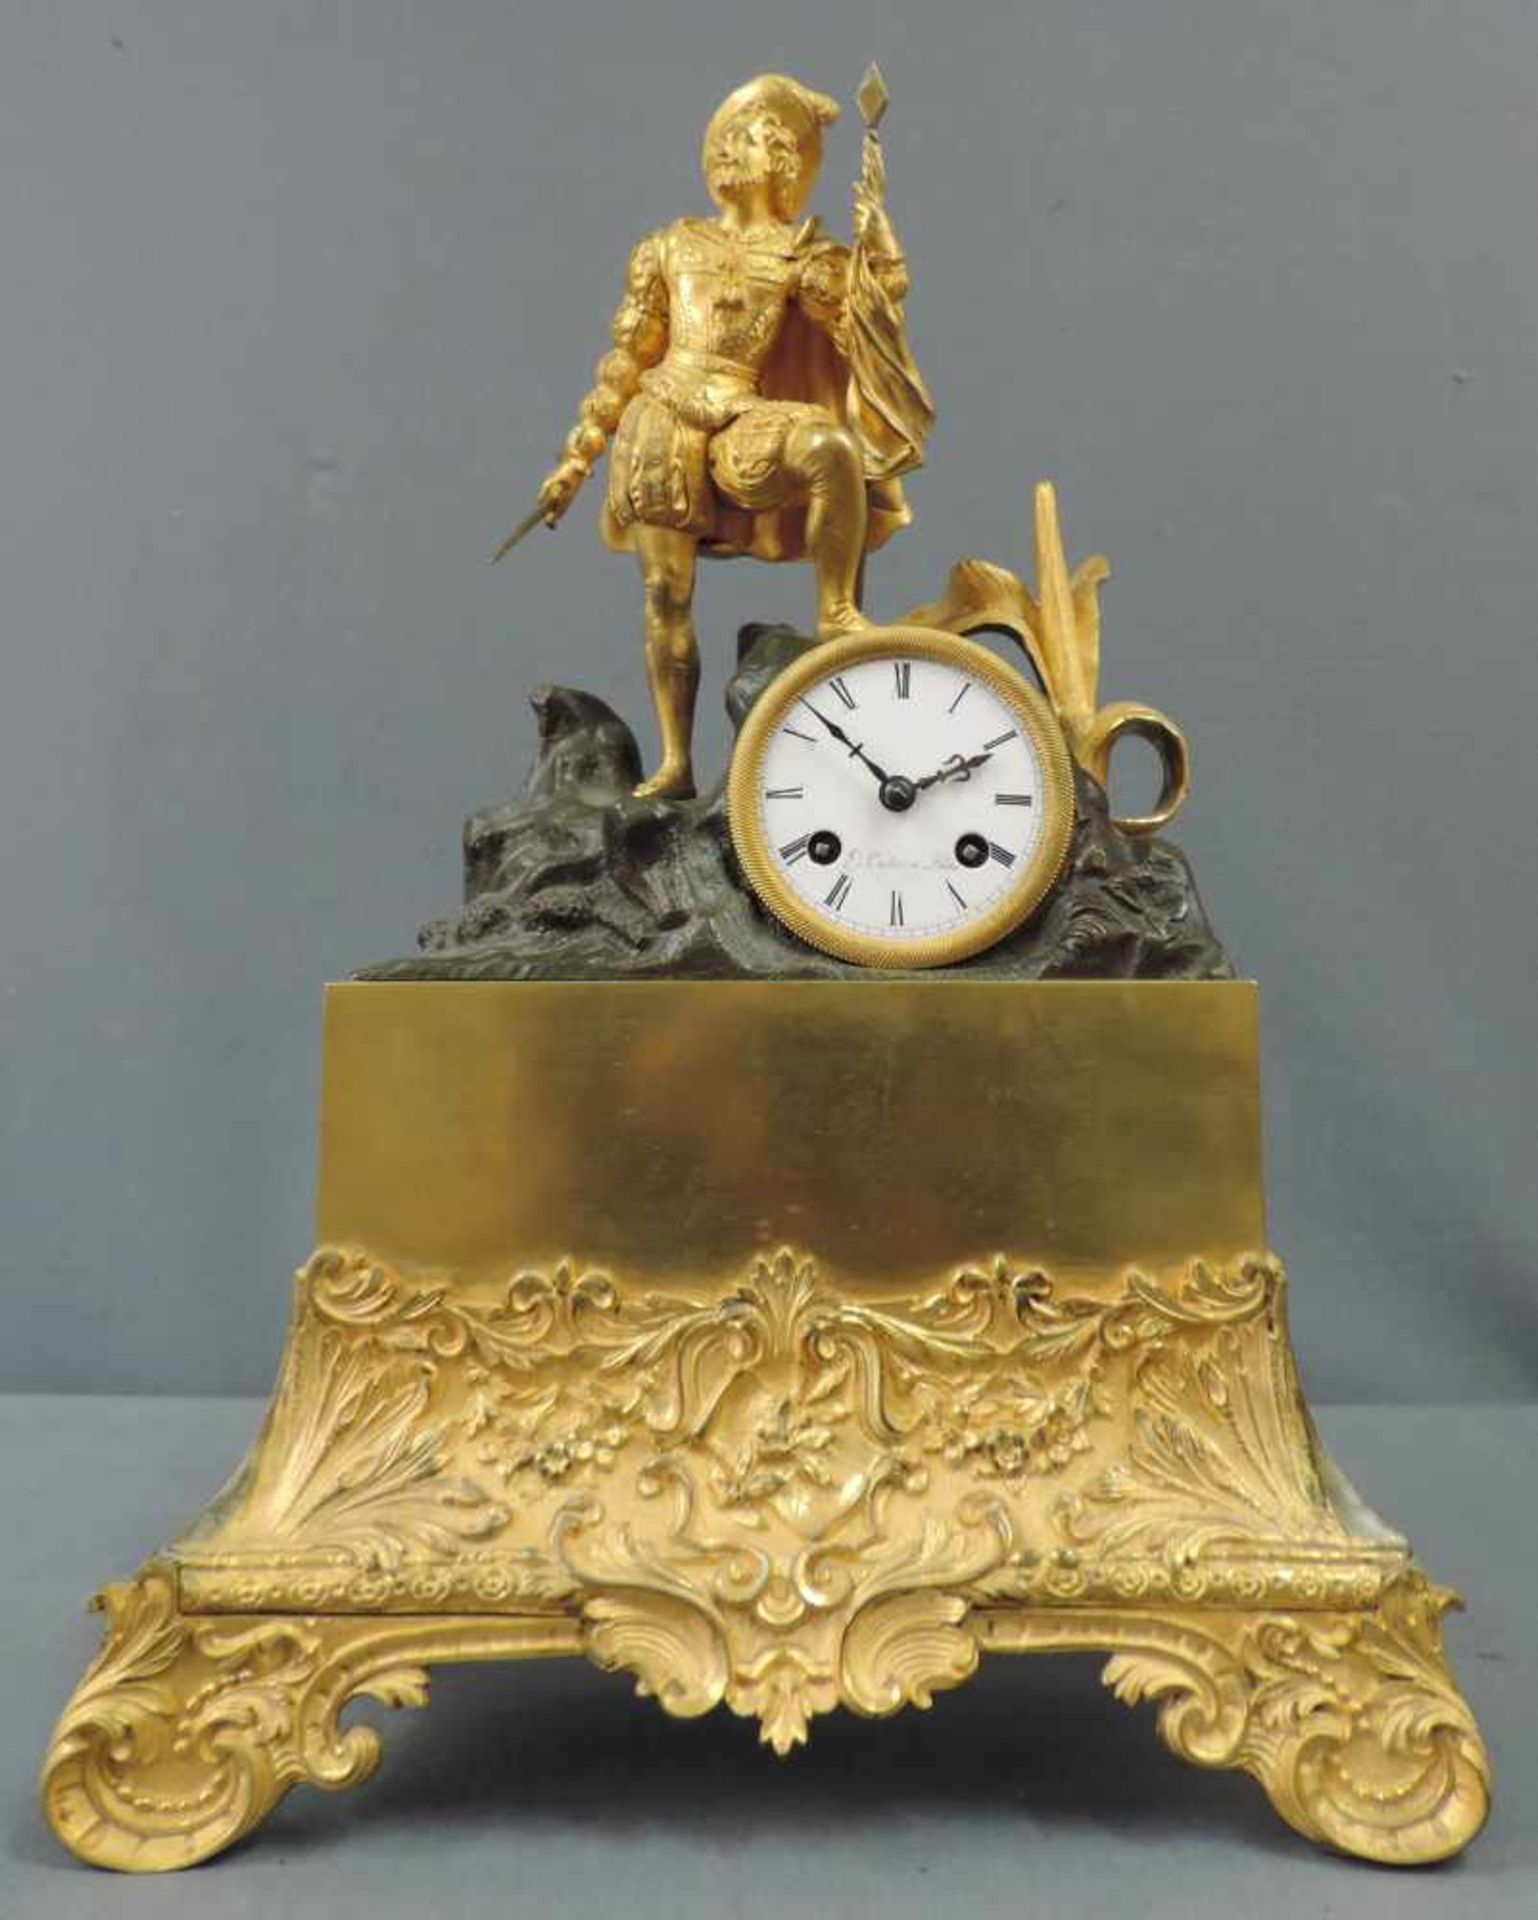 Prunkvolle Kaminuhr, 19. Jahrhundert 44 cm x 31 cm. Metallfigur mit integrierter Uhr zum aufziehen